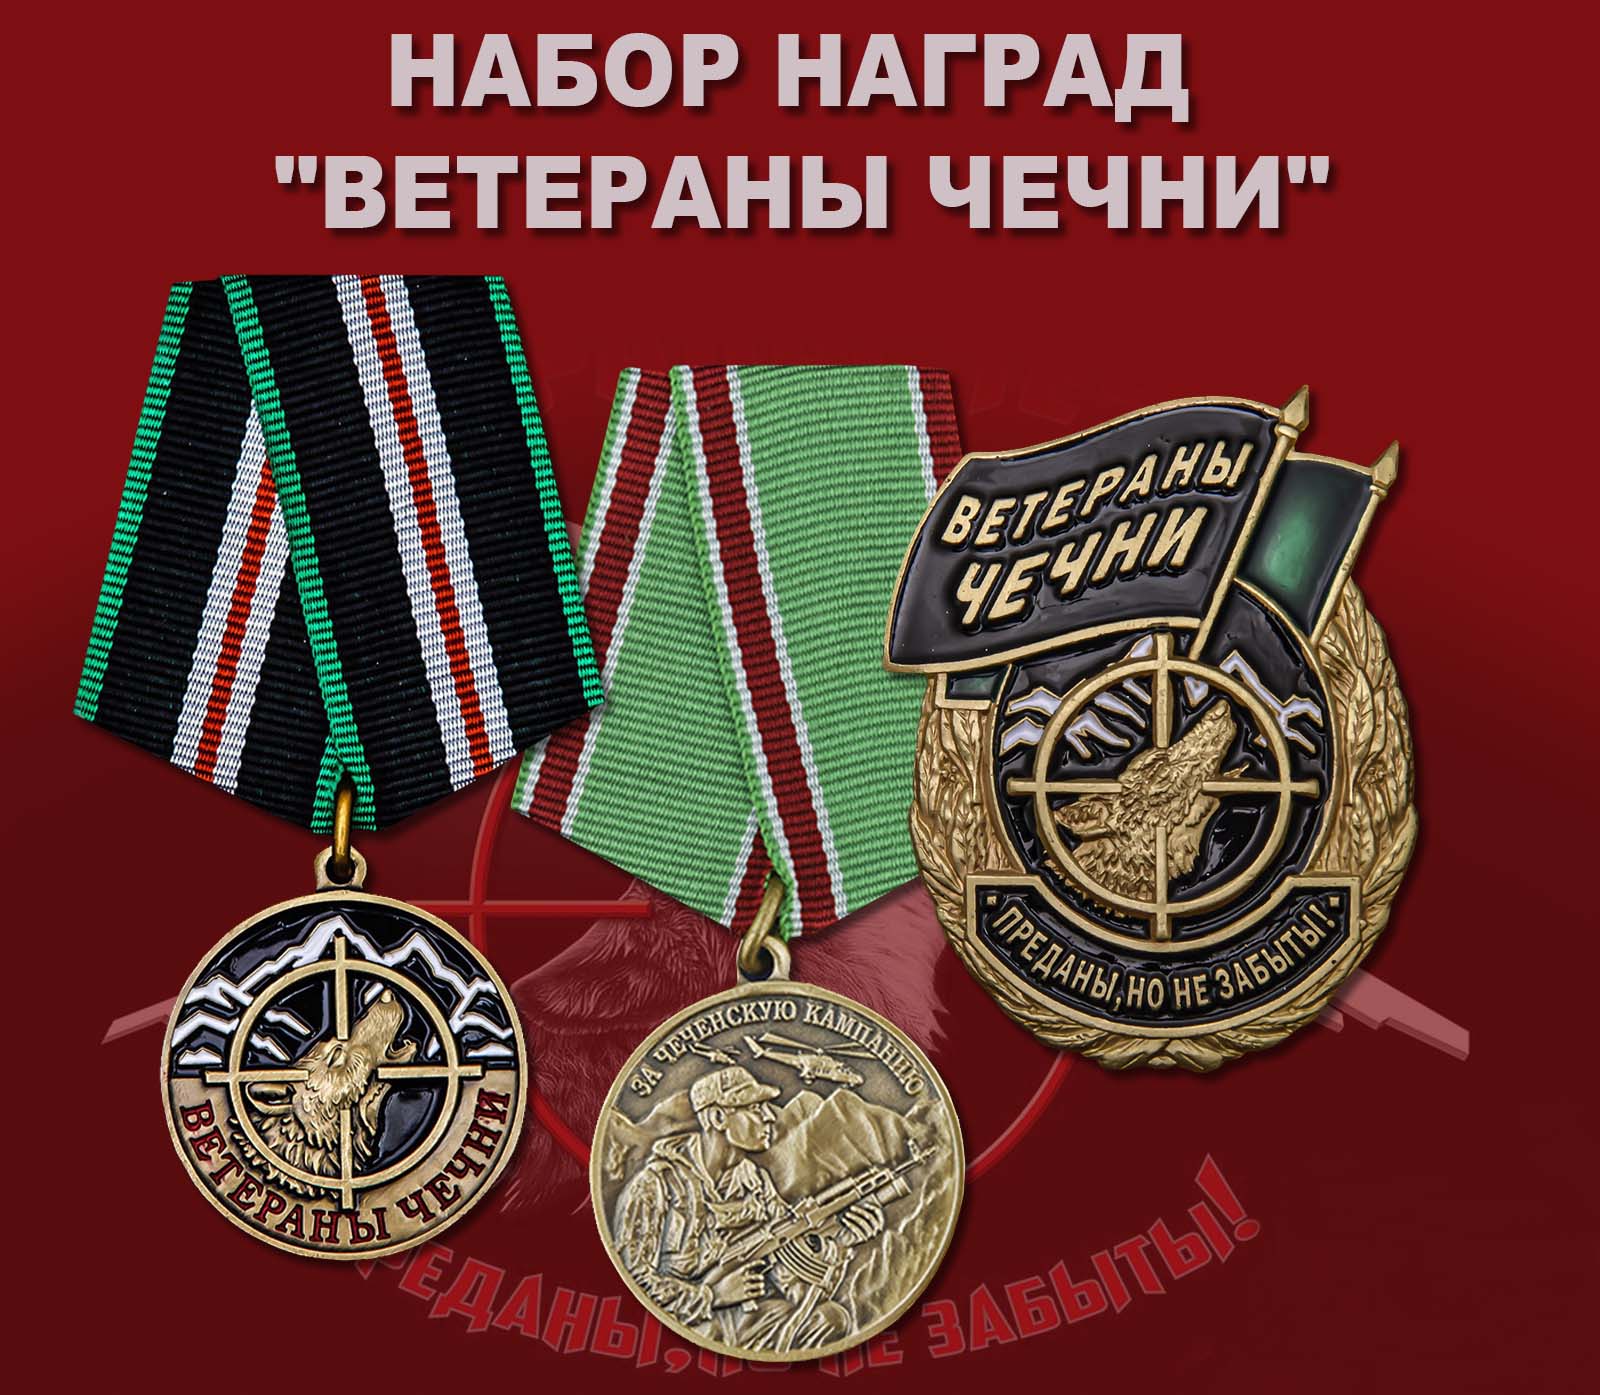 Купить набор наград "Ветераны Чечни"